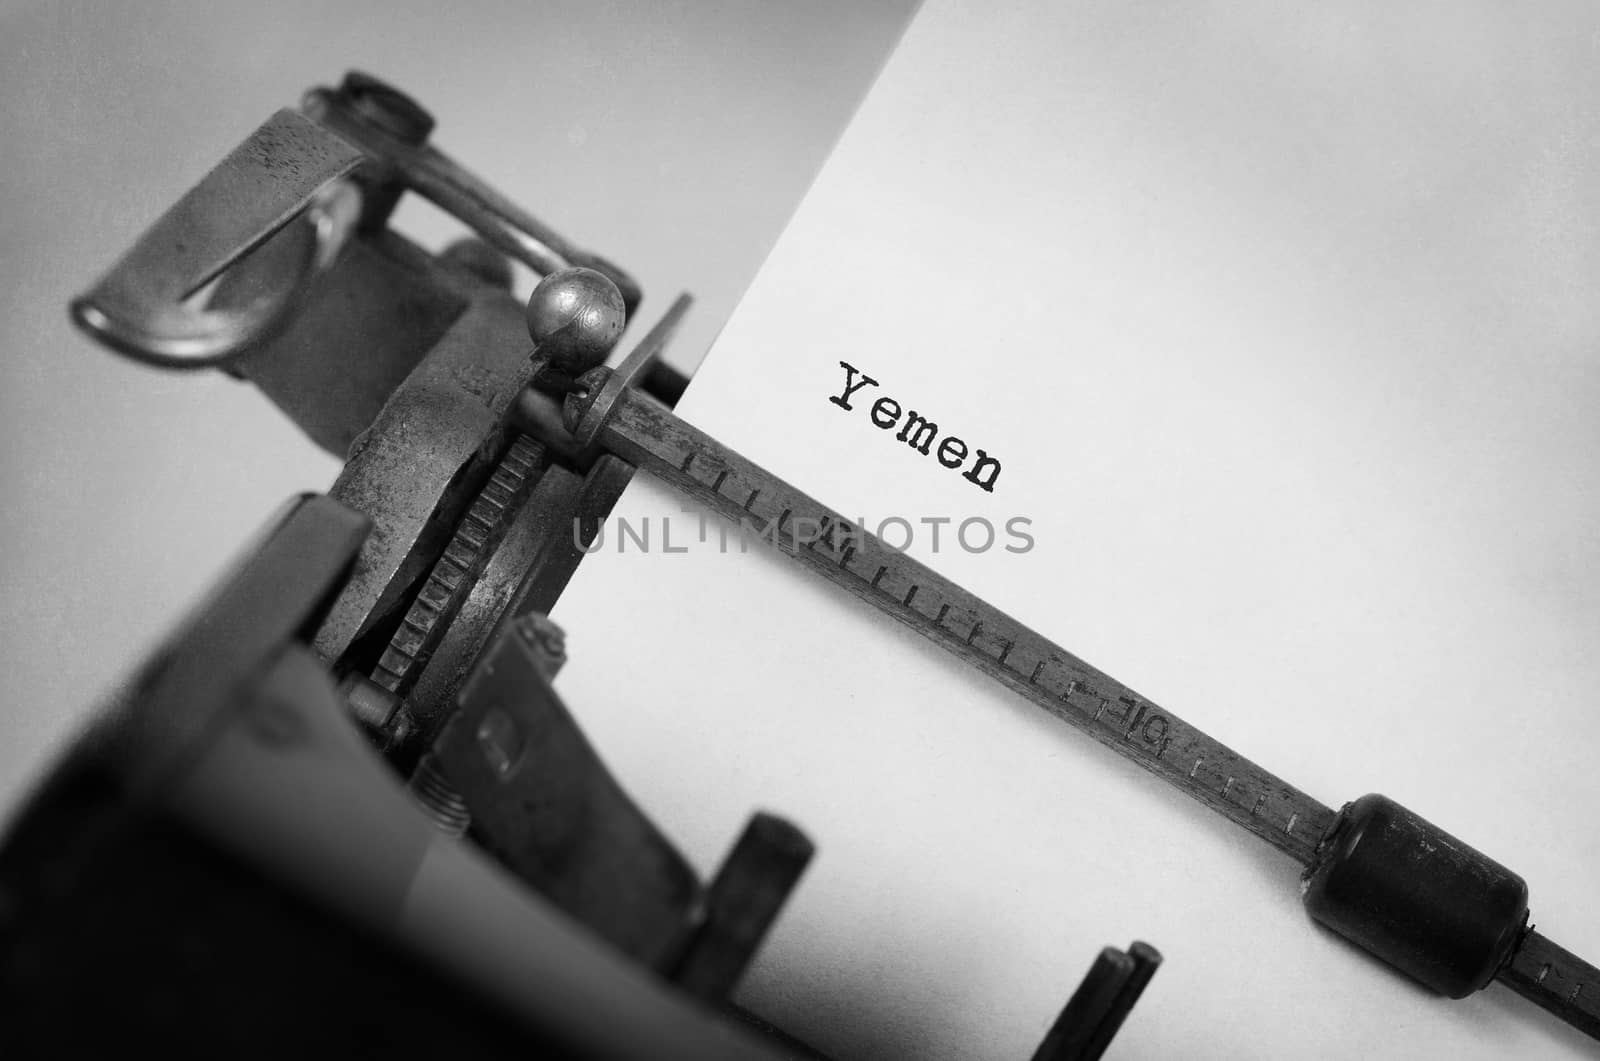 Old typewriter - Yemen by michaklootwijk